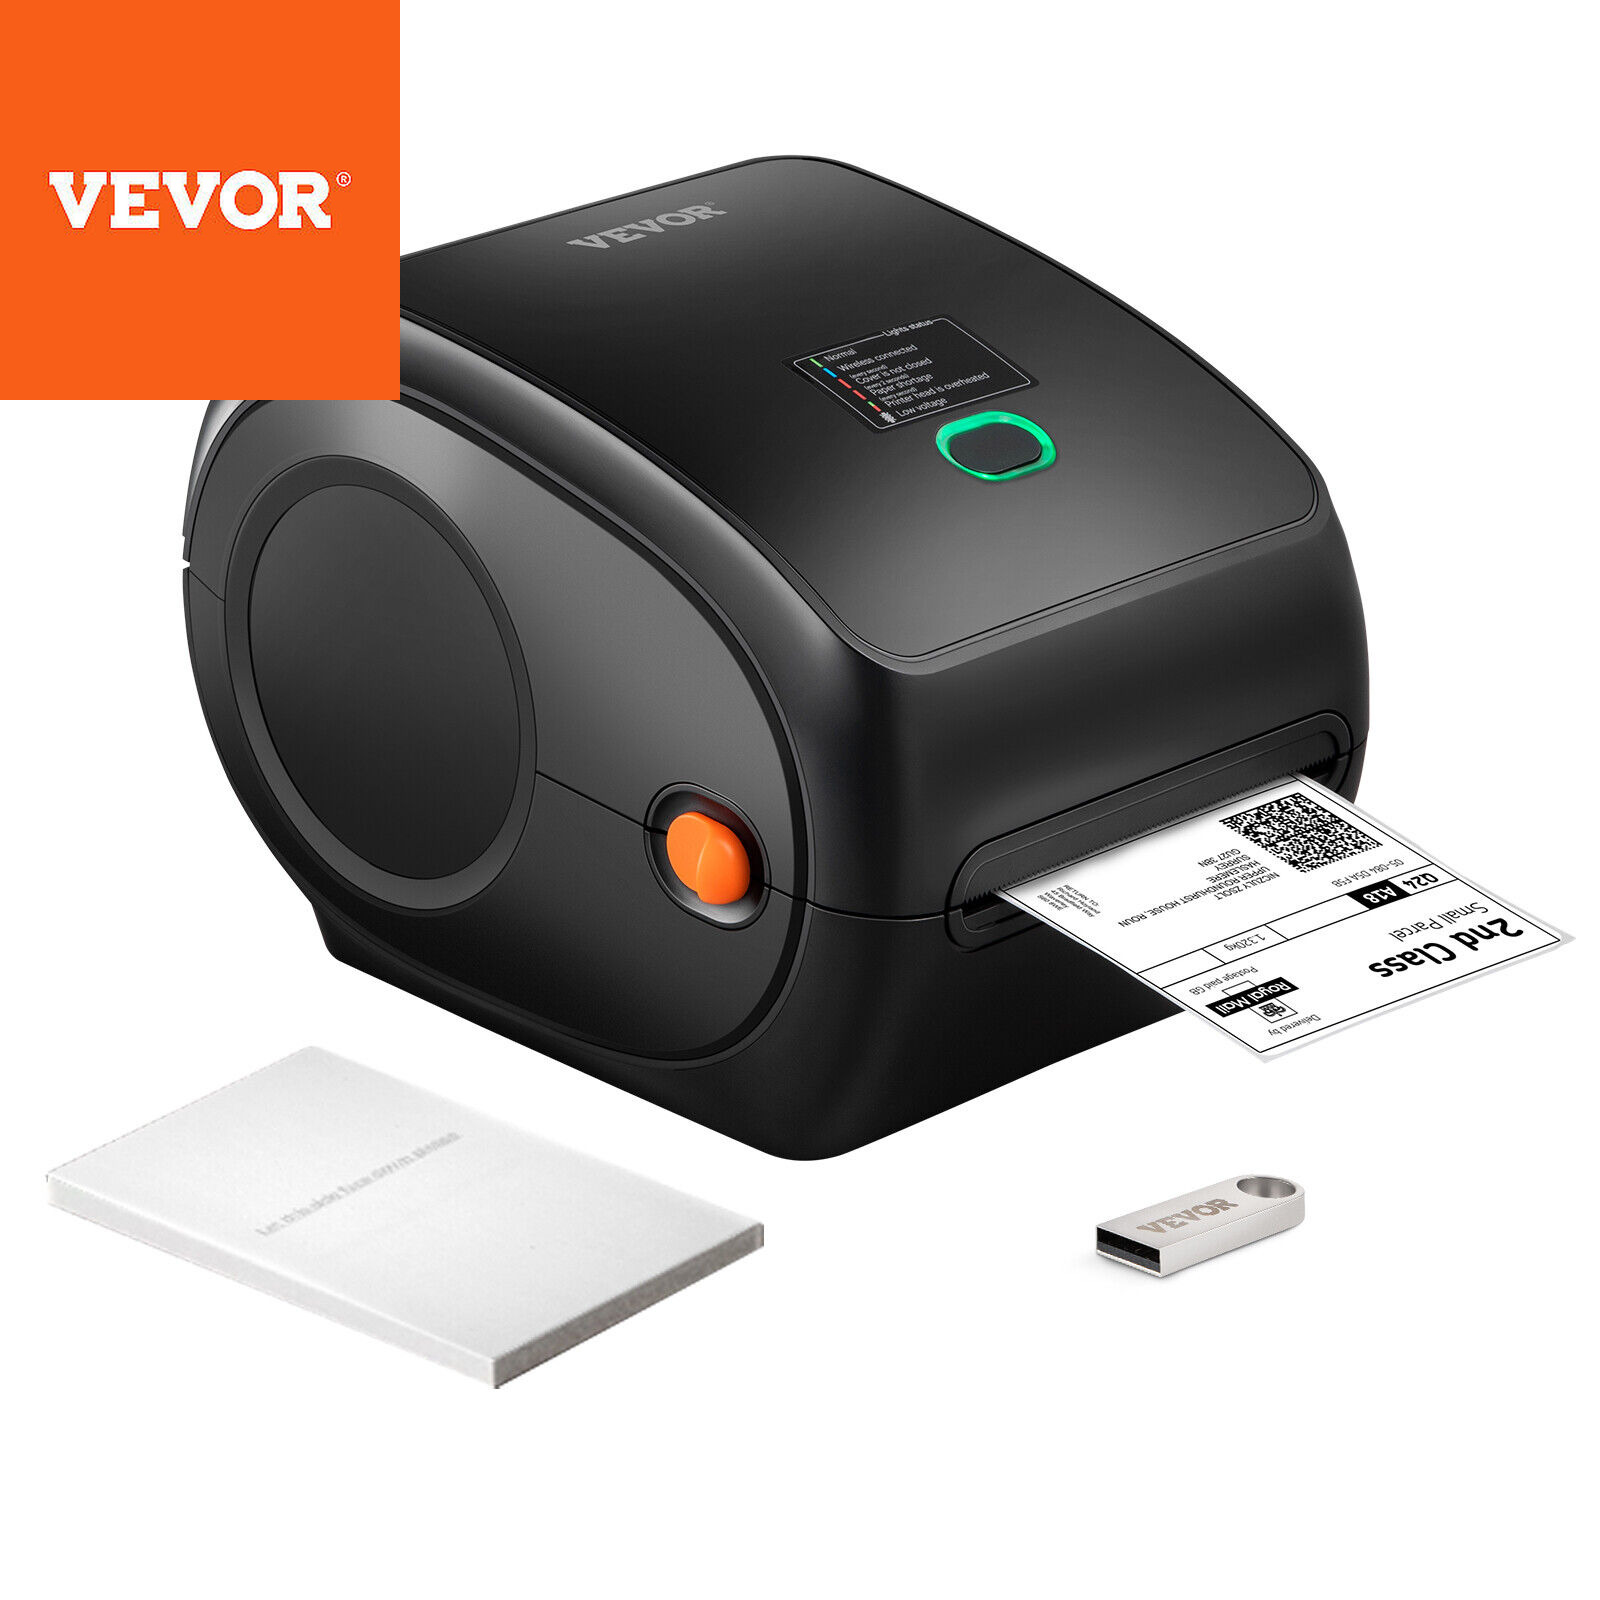 VEVOR Thermal Label Printer 4X6 300DPI Usb/Bluetooth for Amazon Ebay Etsy UPS